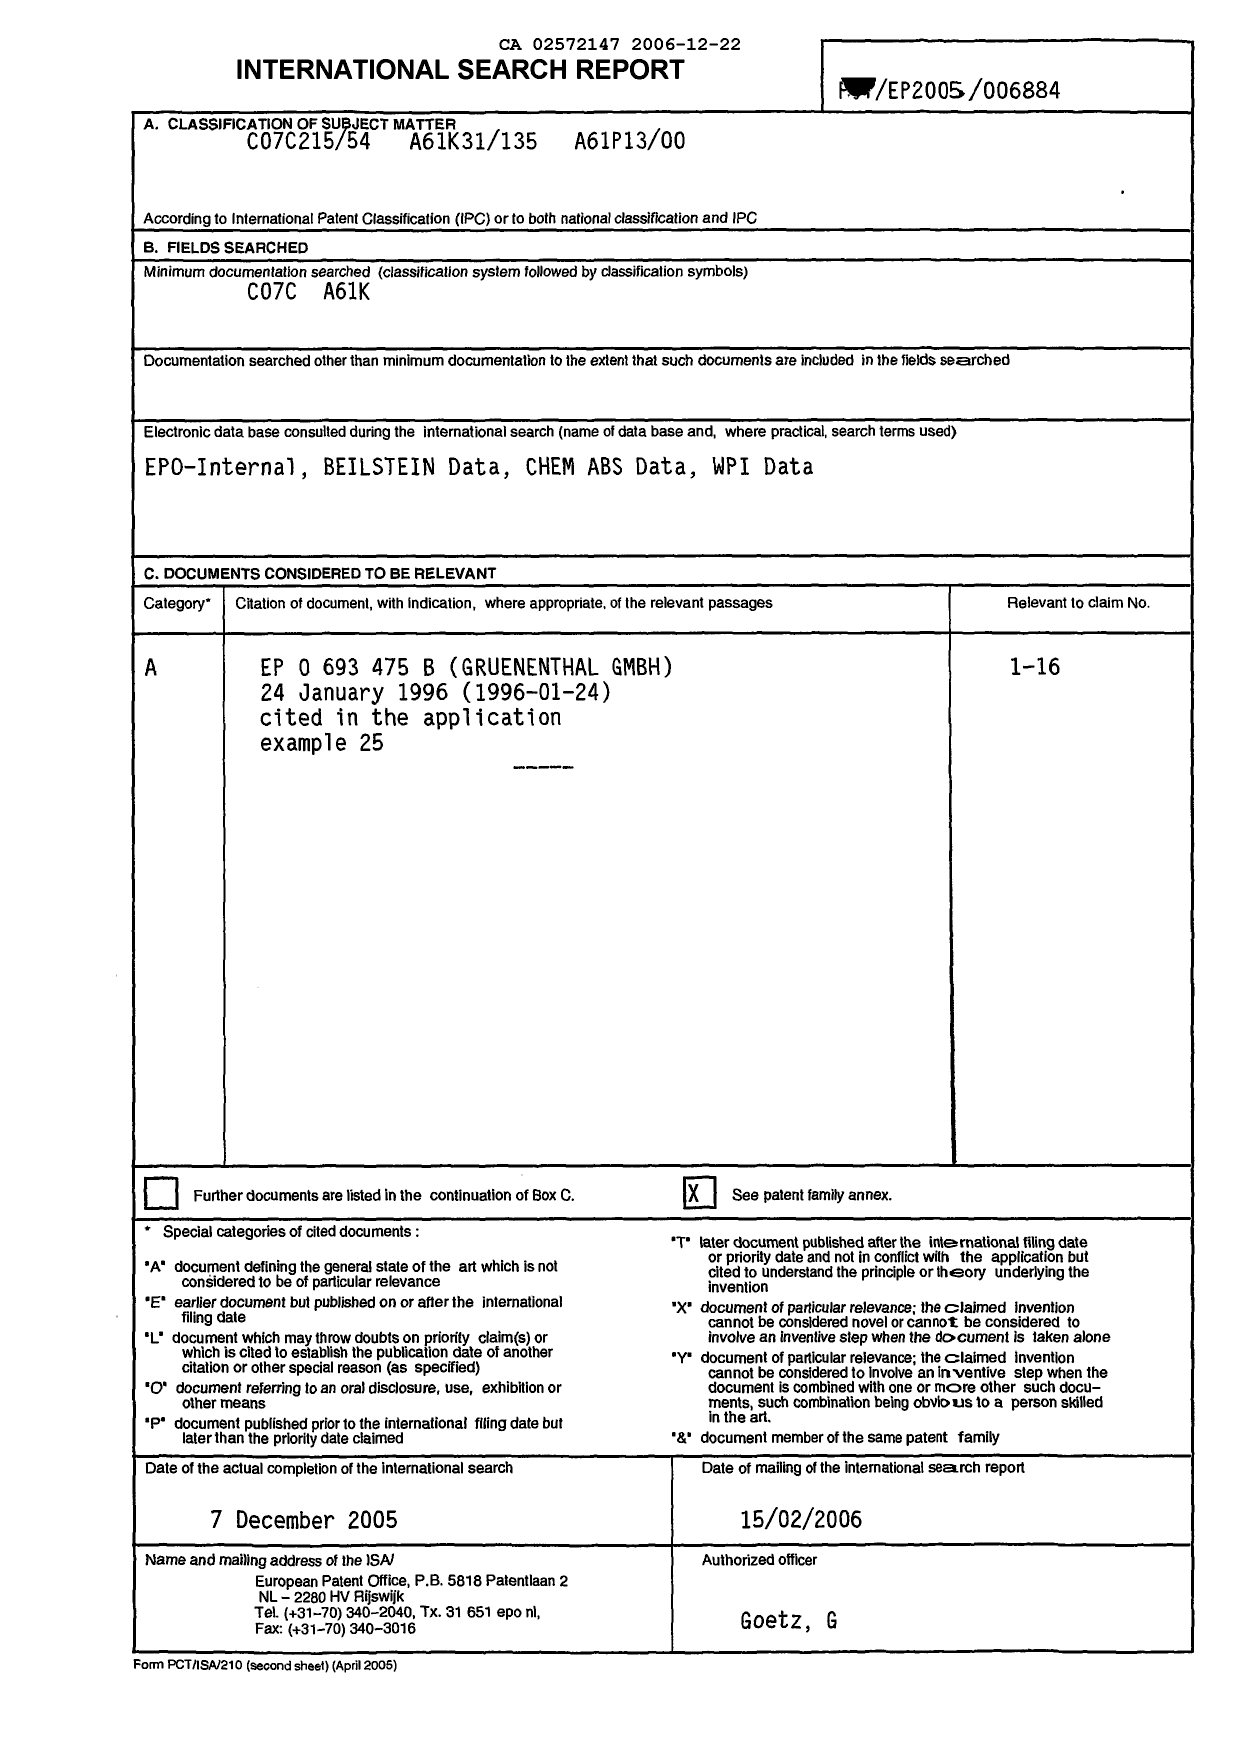 Document de brevet canadien 2572147. PCT 20051222. Image 1 de 2